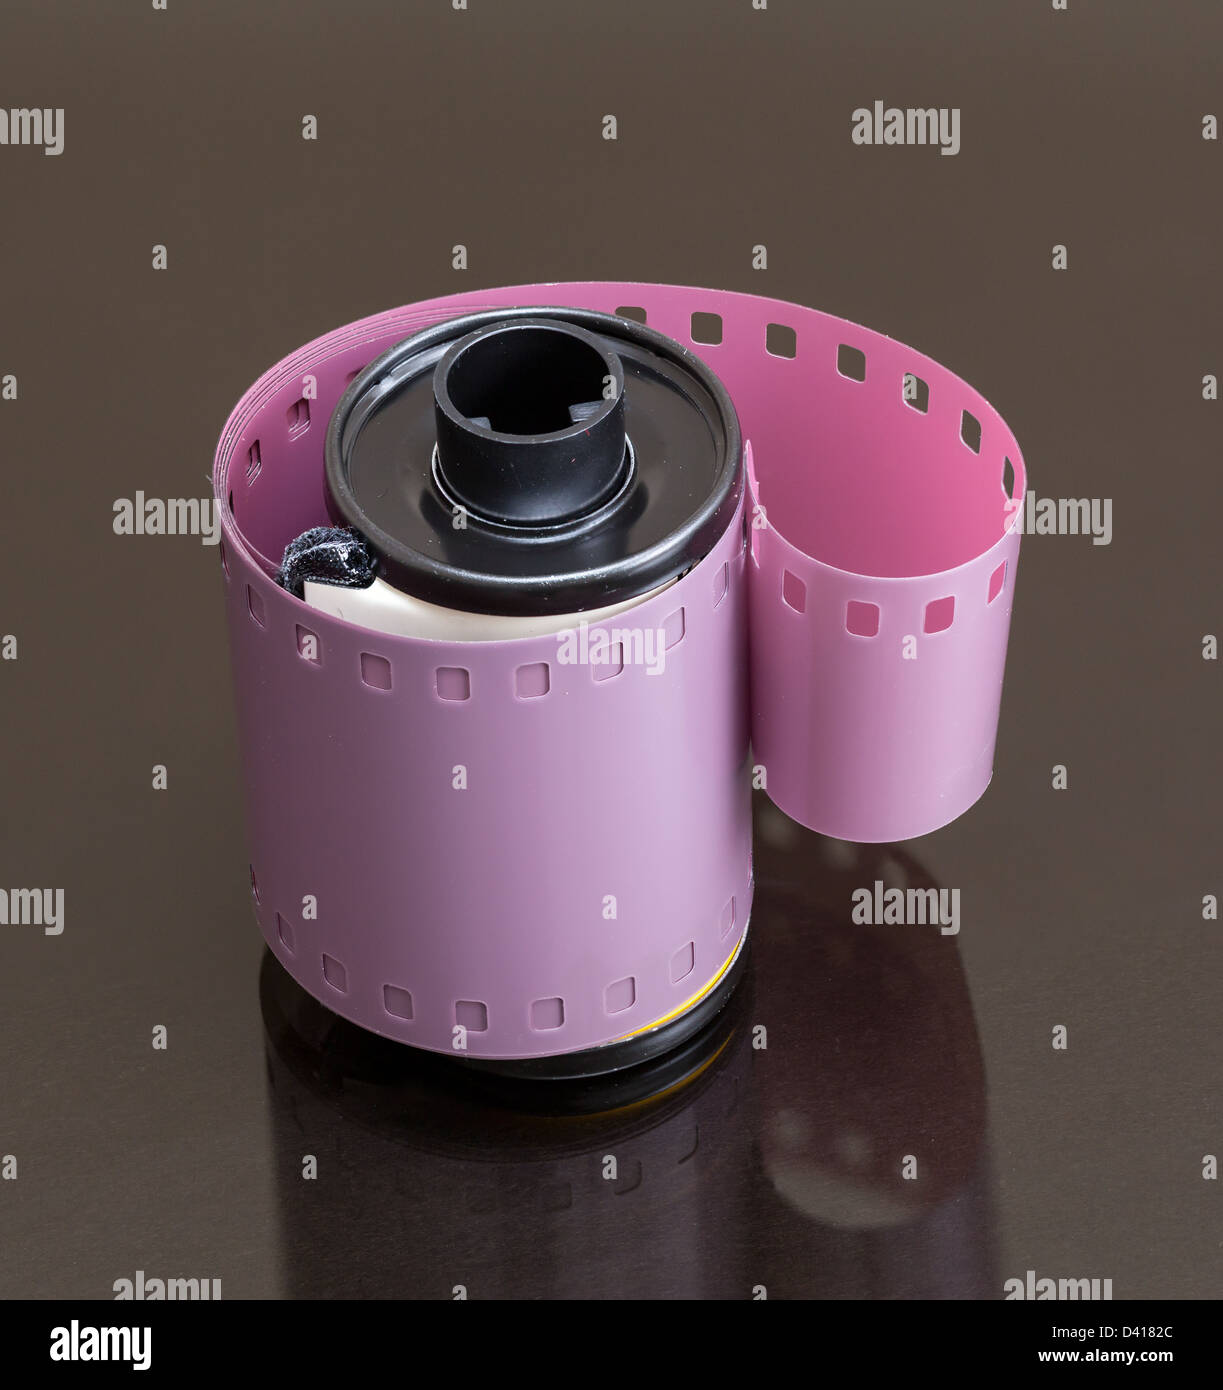 Immagine macro di pellicola 35mm canister con negativo a spirale sulla superficie riflettente Foto Stock